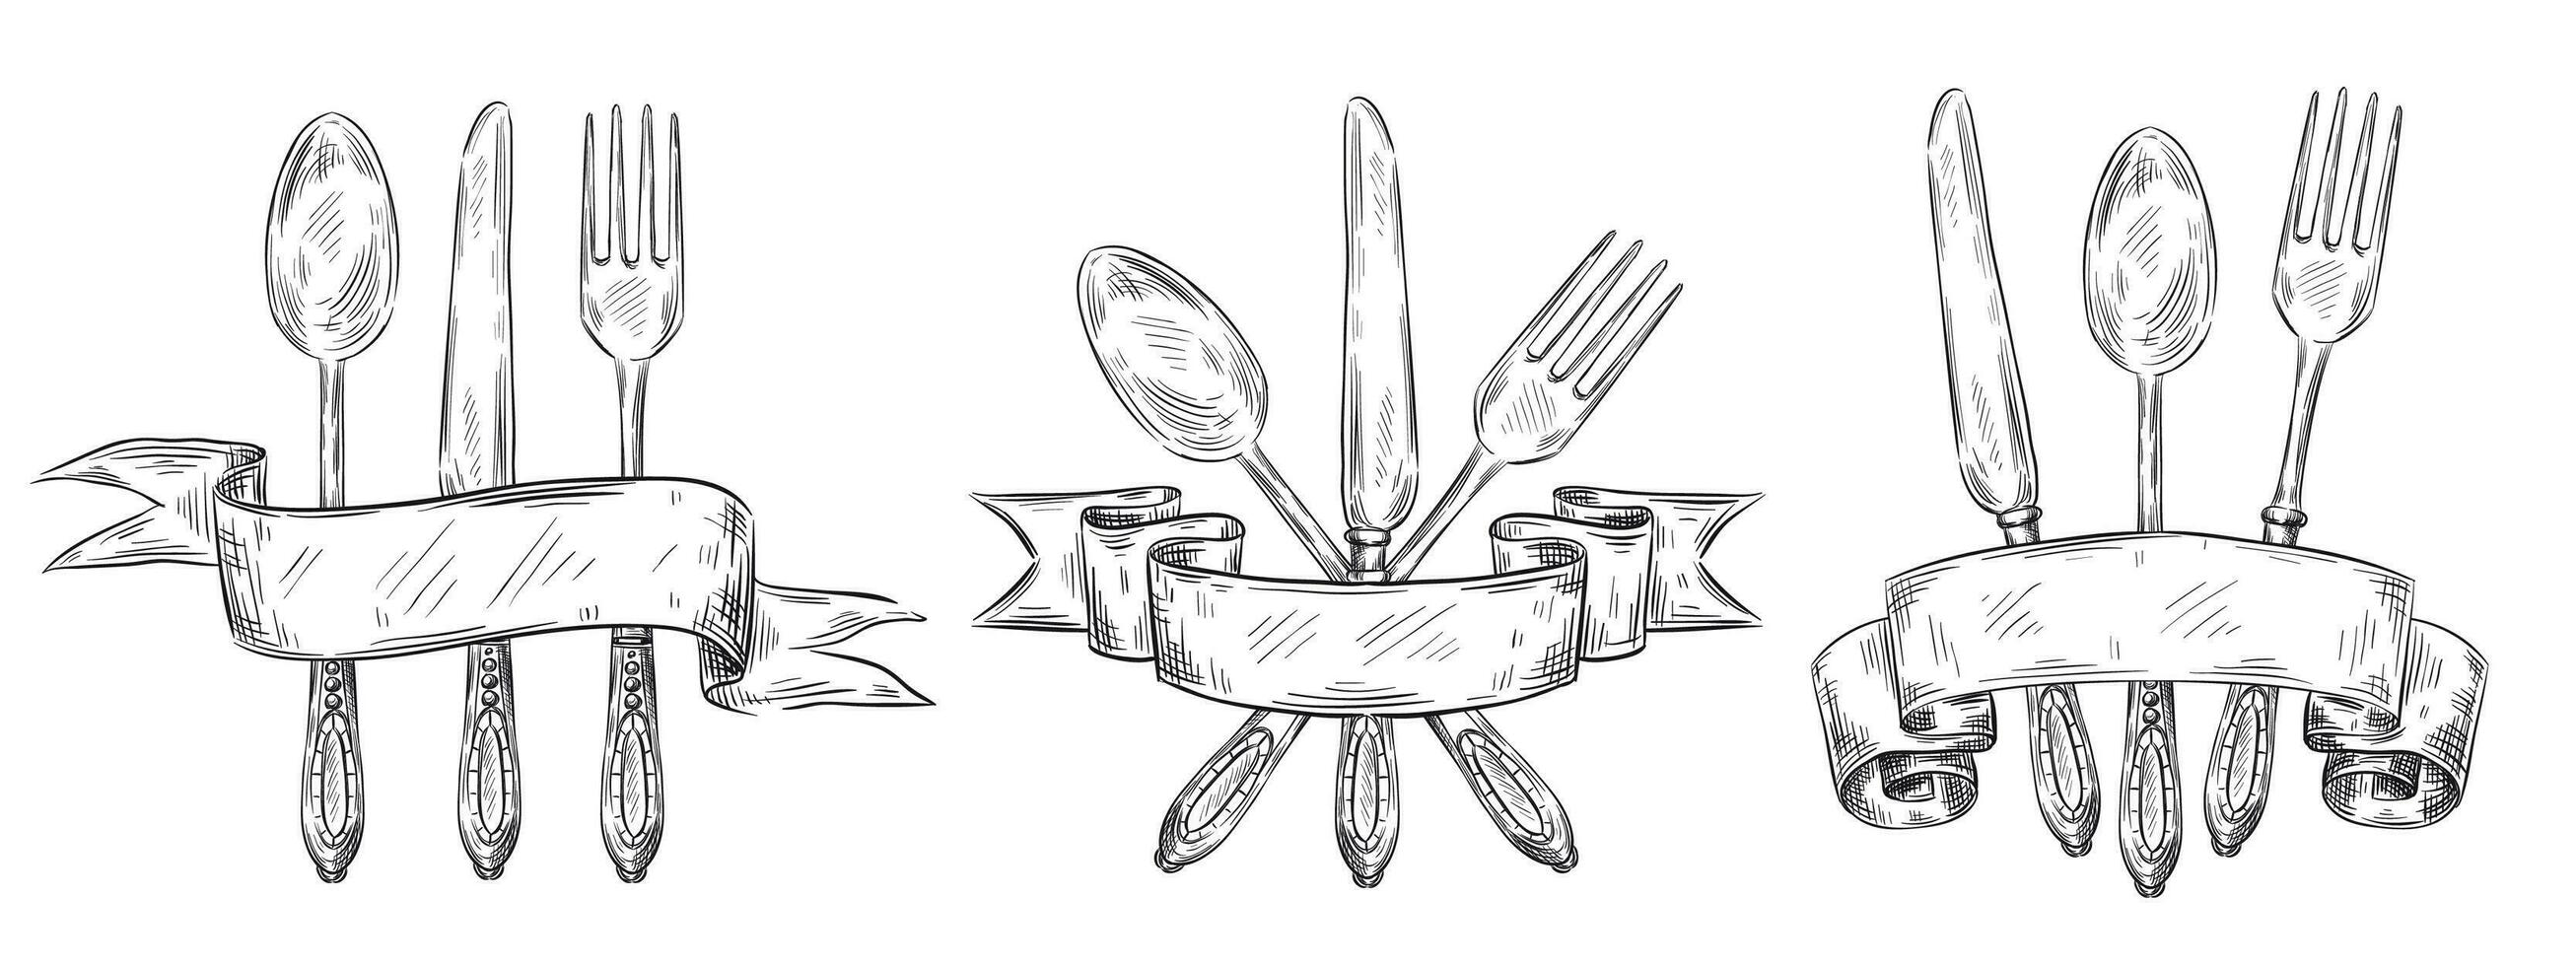 bestek met lintje. wijnoogst tafel instelling gravure, hand- getrokken vork, mes en voedsel lepel schetsen vector illustratie reeks